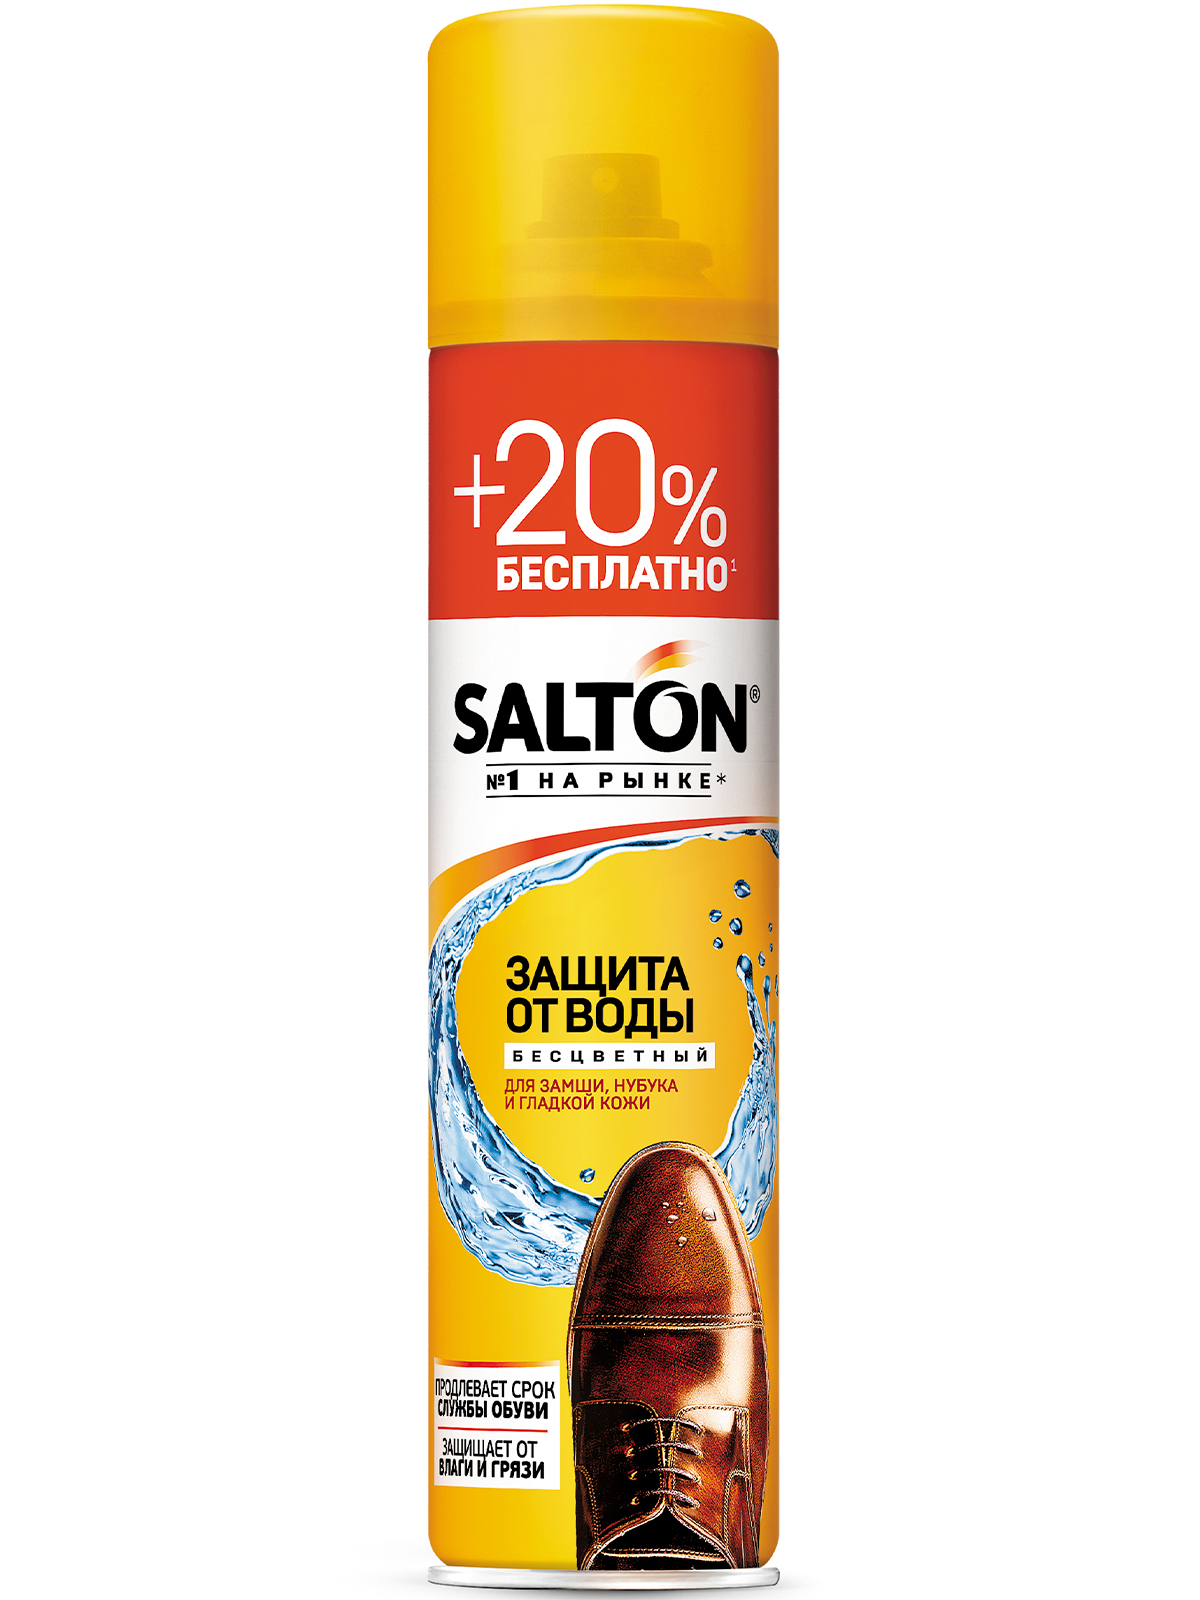 Средство для защиты от воды Salton для гладкой кожи замши нубука и ткани 250 мл